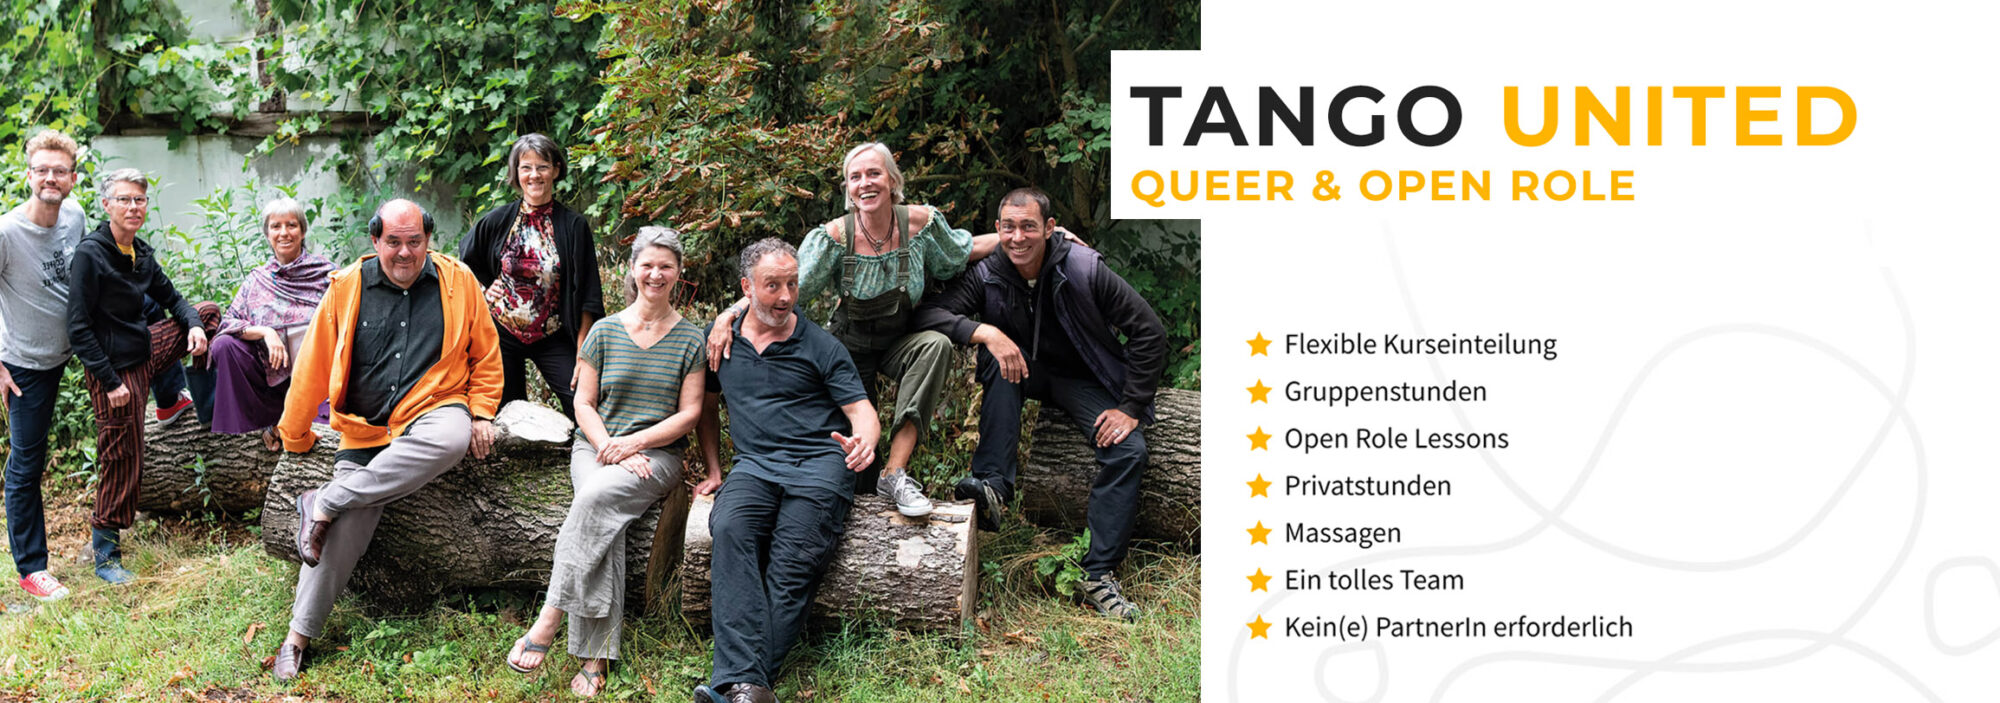 Tango United - Queer und Open Role - mit Ines Moussavi